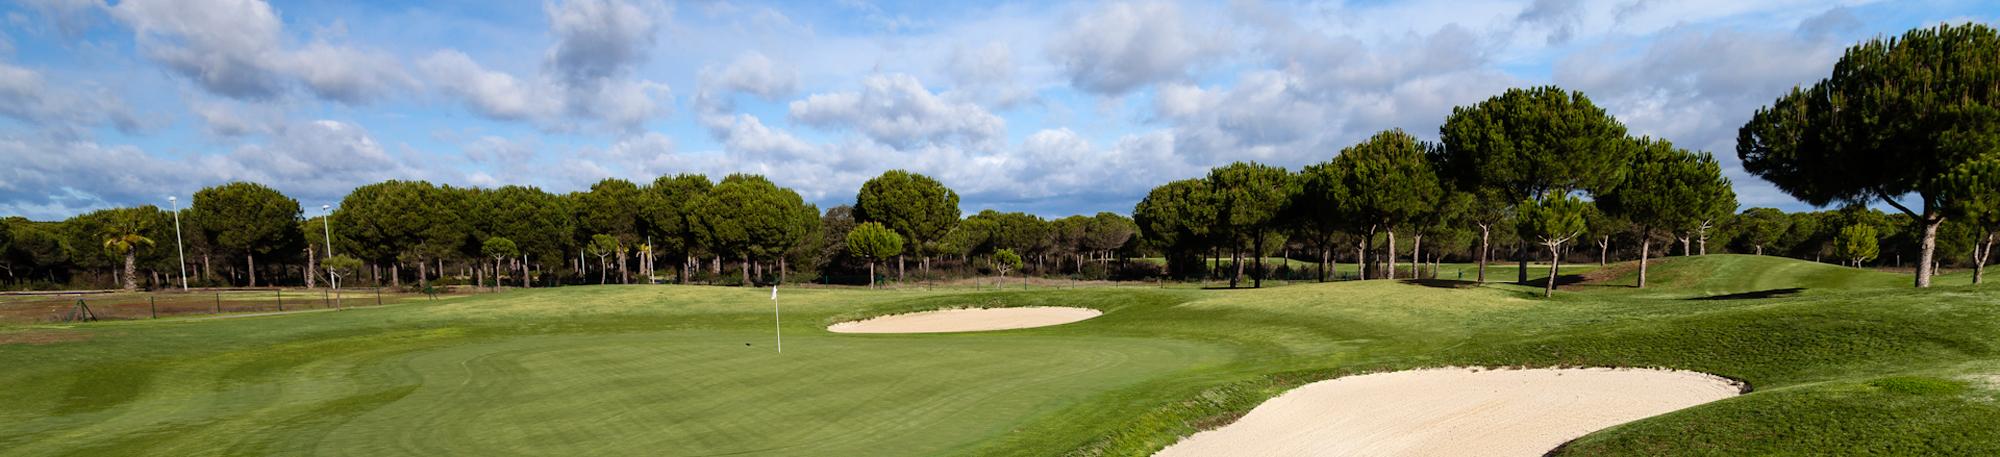 The La Monacilla Golf Club's beautiful golf course in striking Costa de la Luz.